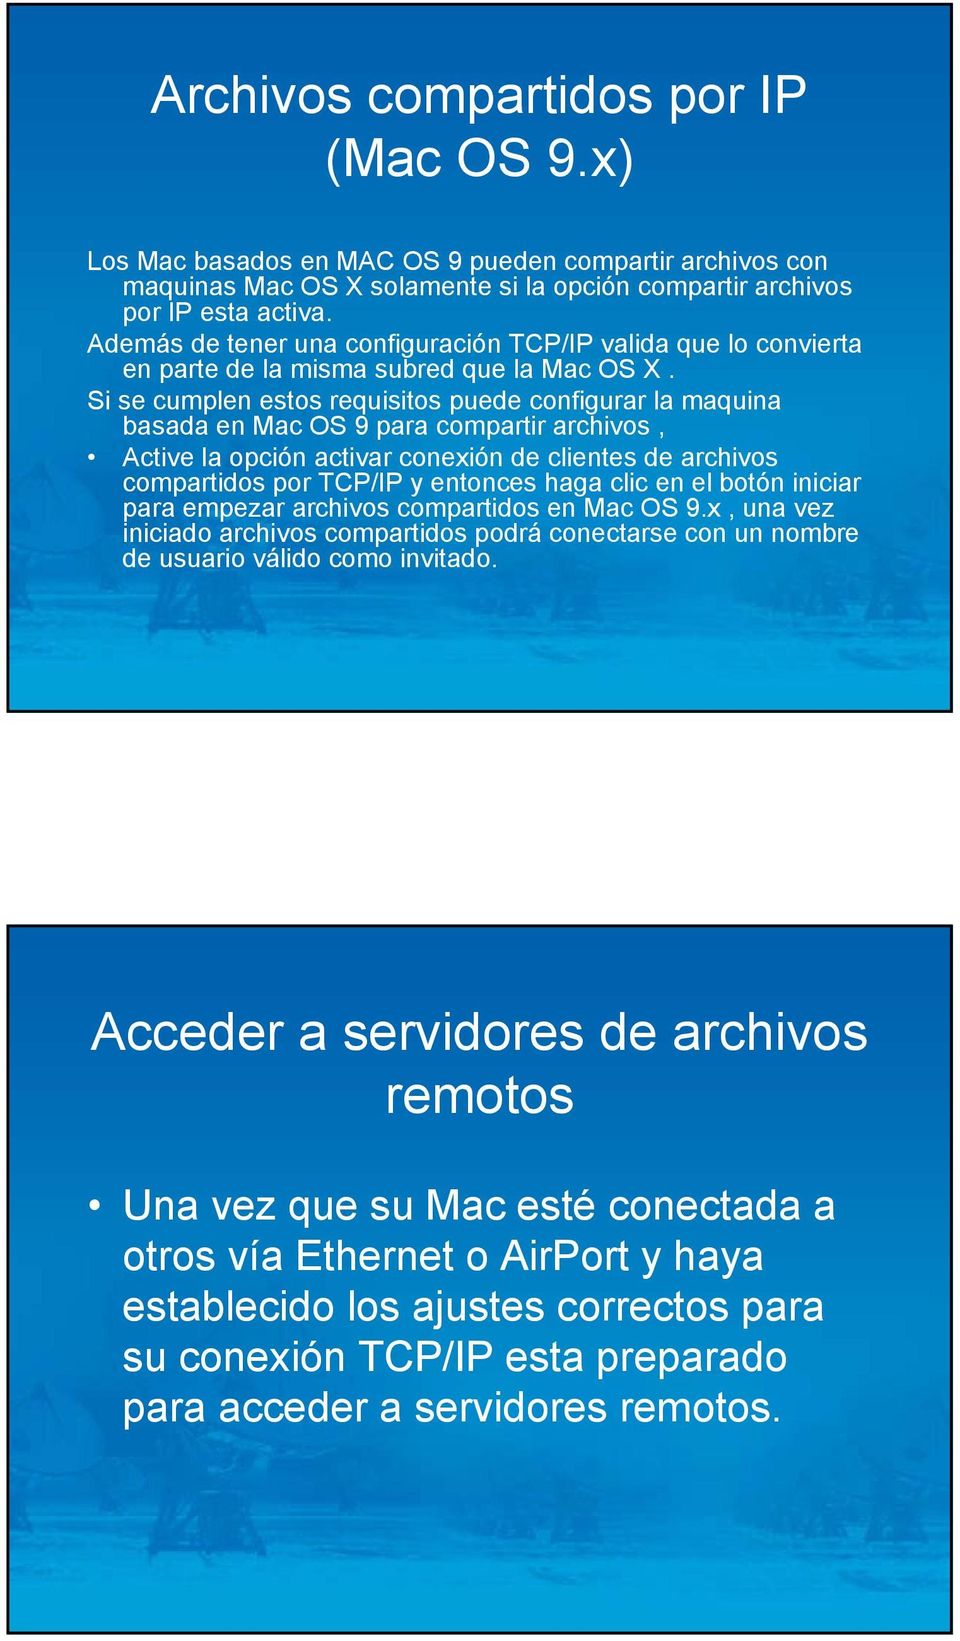 Si se cumplen estos requisitos puede configurar la maquina basada en Mac OS 9 para compartir archivos, Active la opción activar conexión de clientes de archivos compartidos por TCP/IP y entonces haga